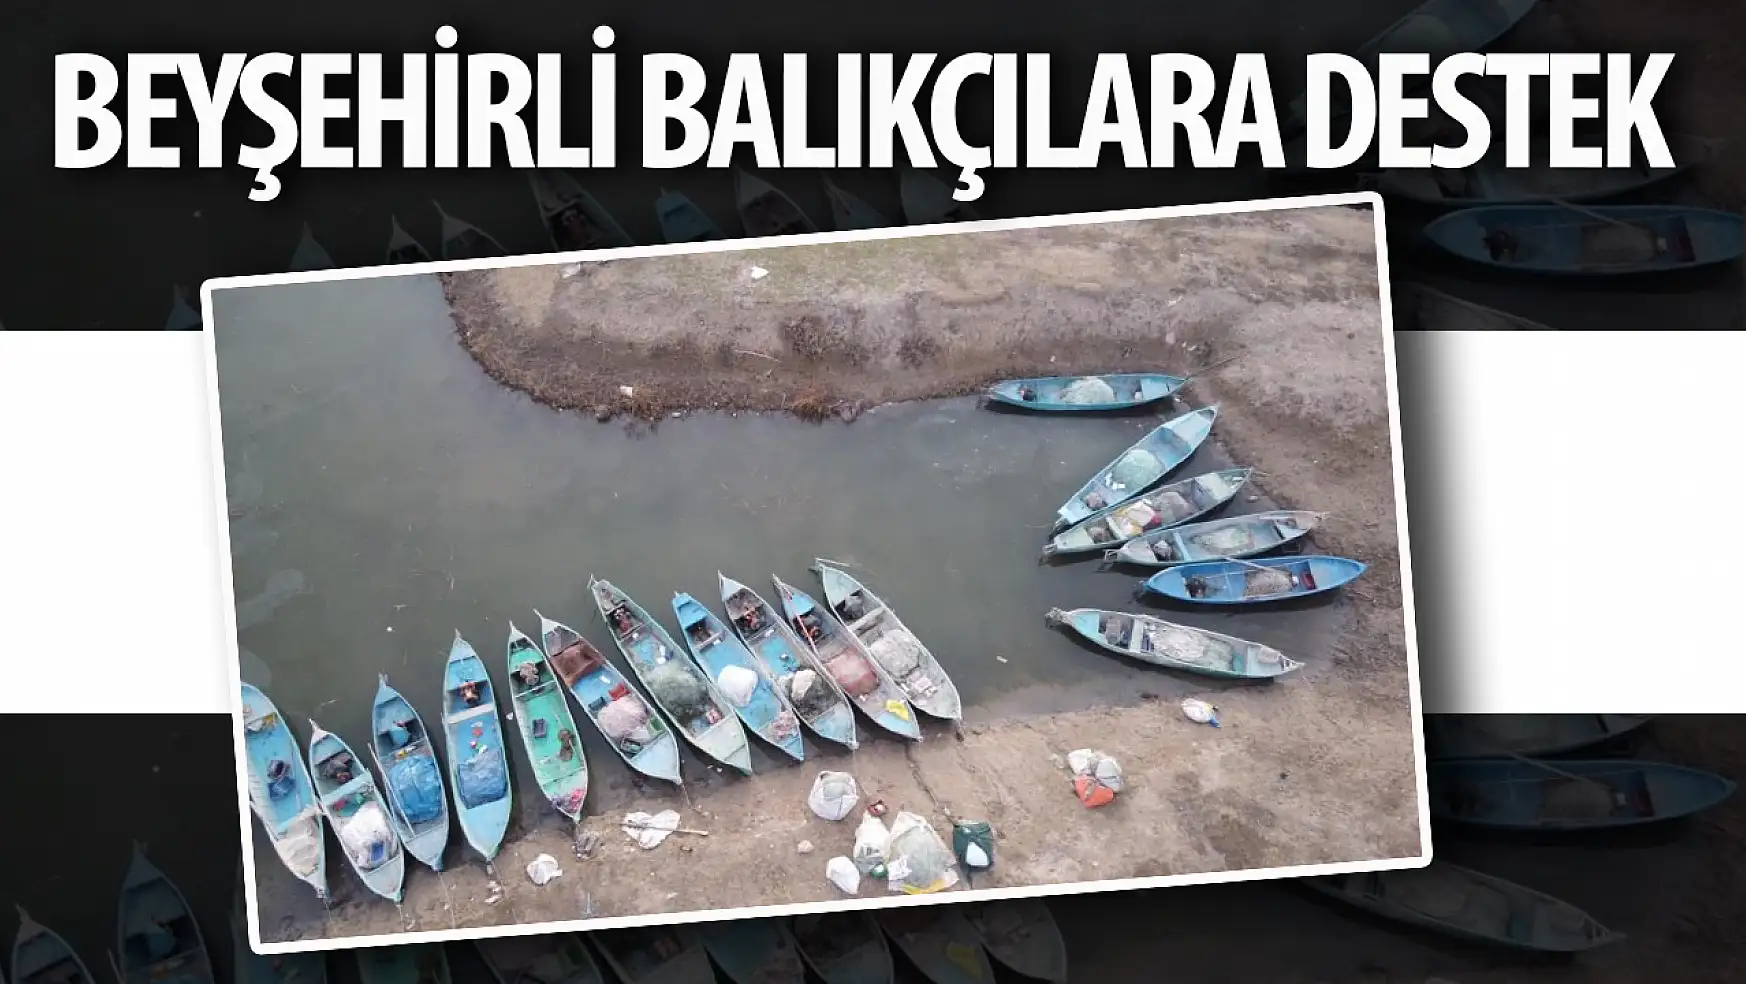 Beyşehir'de balıkçılara destek!